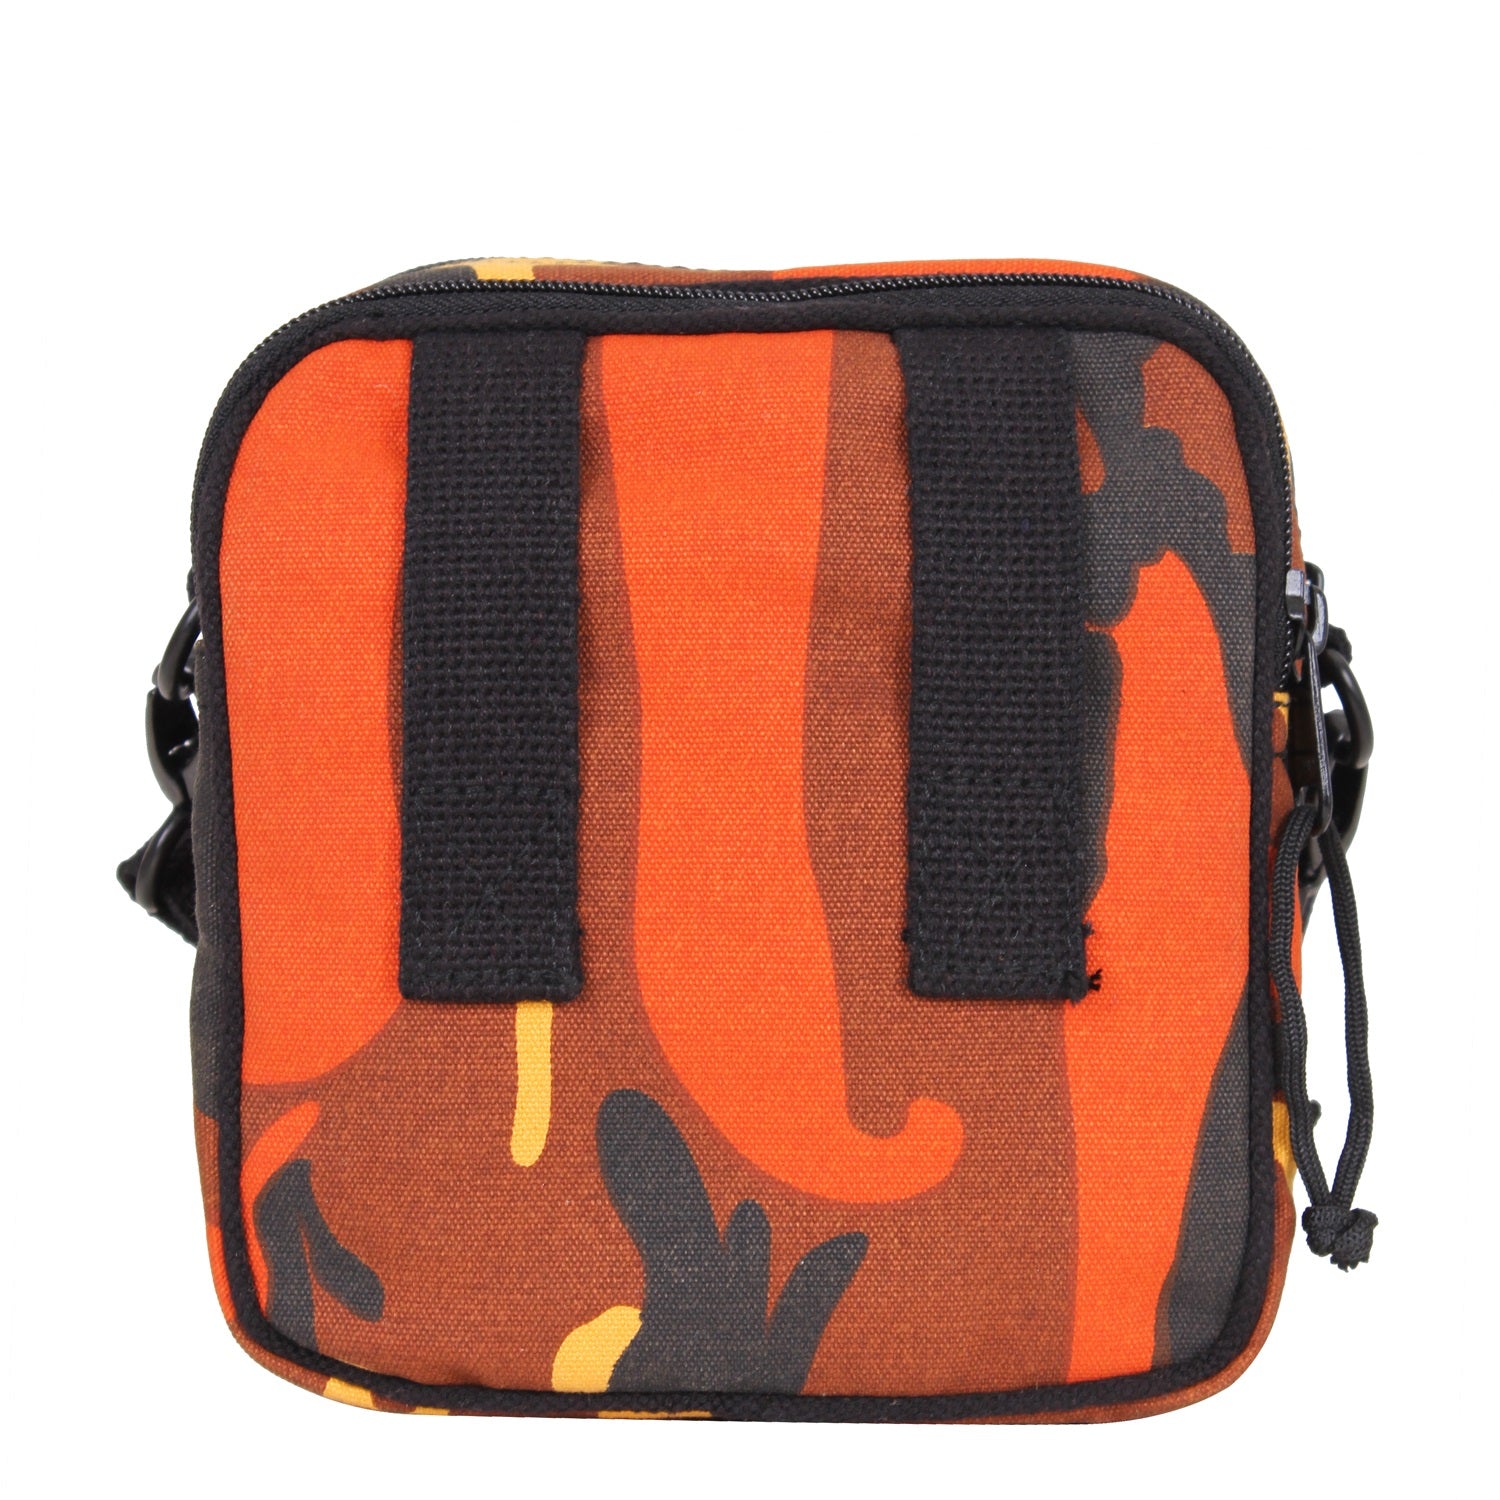 Rothco Camo Excursion Organizer Shoulder Bag Savage Orange Camo